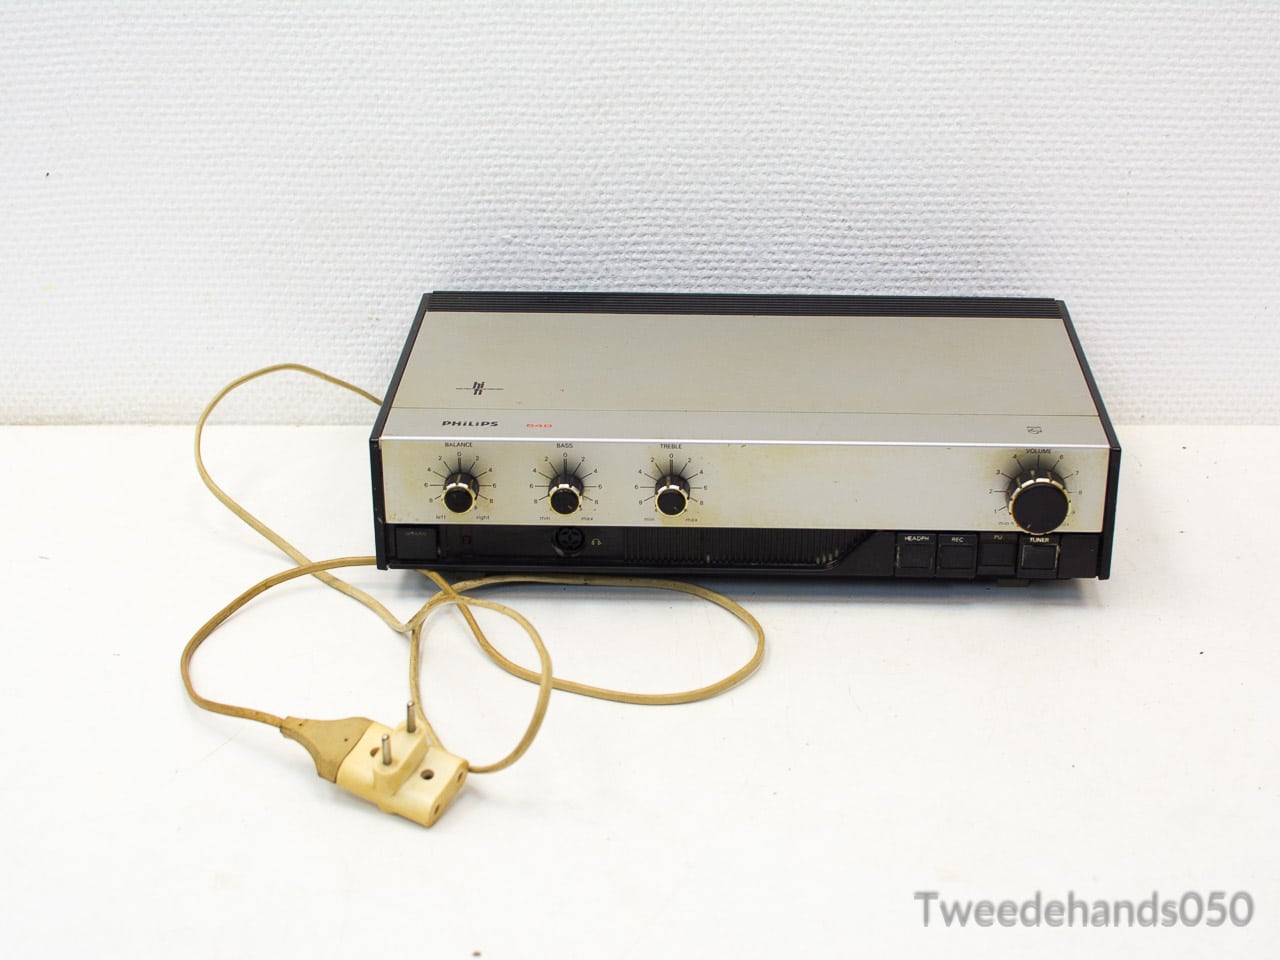 uitzetten Vader fage Verpersoonlijking Philips amplifier 540, Versterker vintage 83818 - Tweedehands050